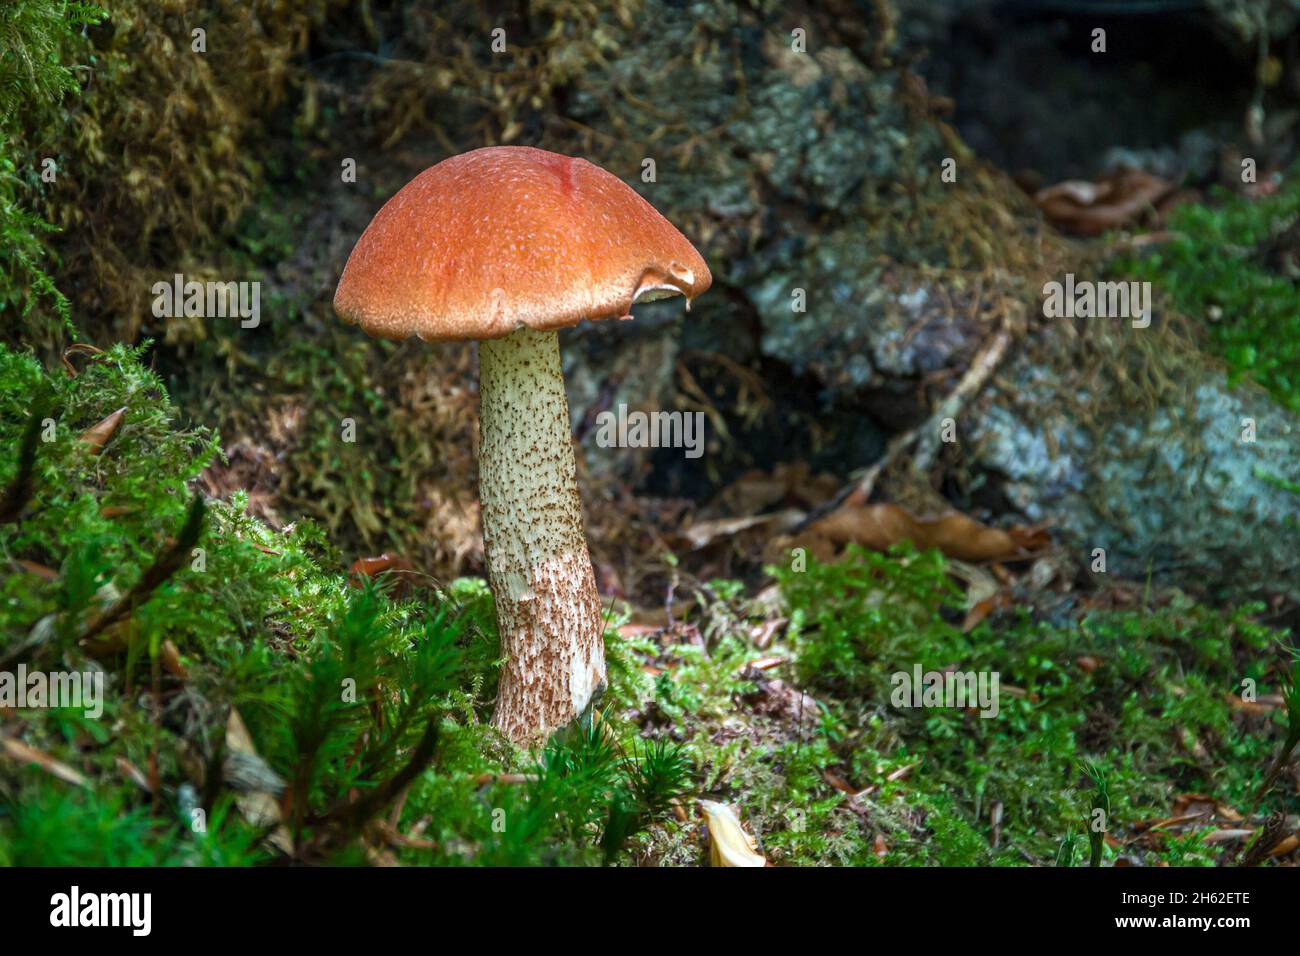 la calotte rouge de la forêt décidue, également la calotte rouge de chêne ou le tétras de chêne, est un type de champignon de la famille des parents de boletus épais. Banque D'Images